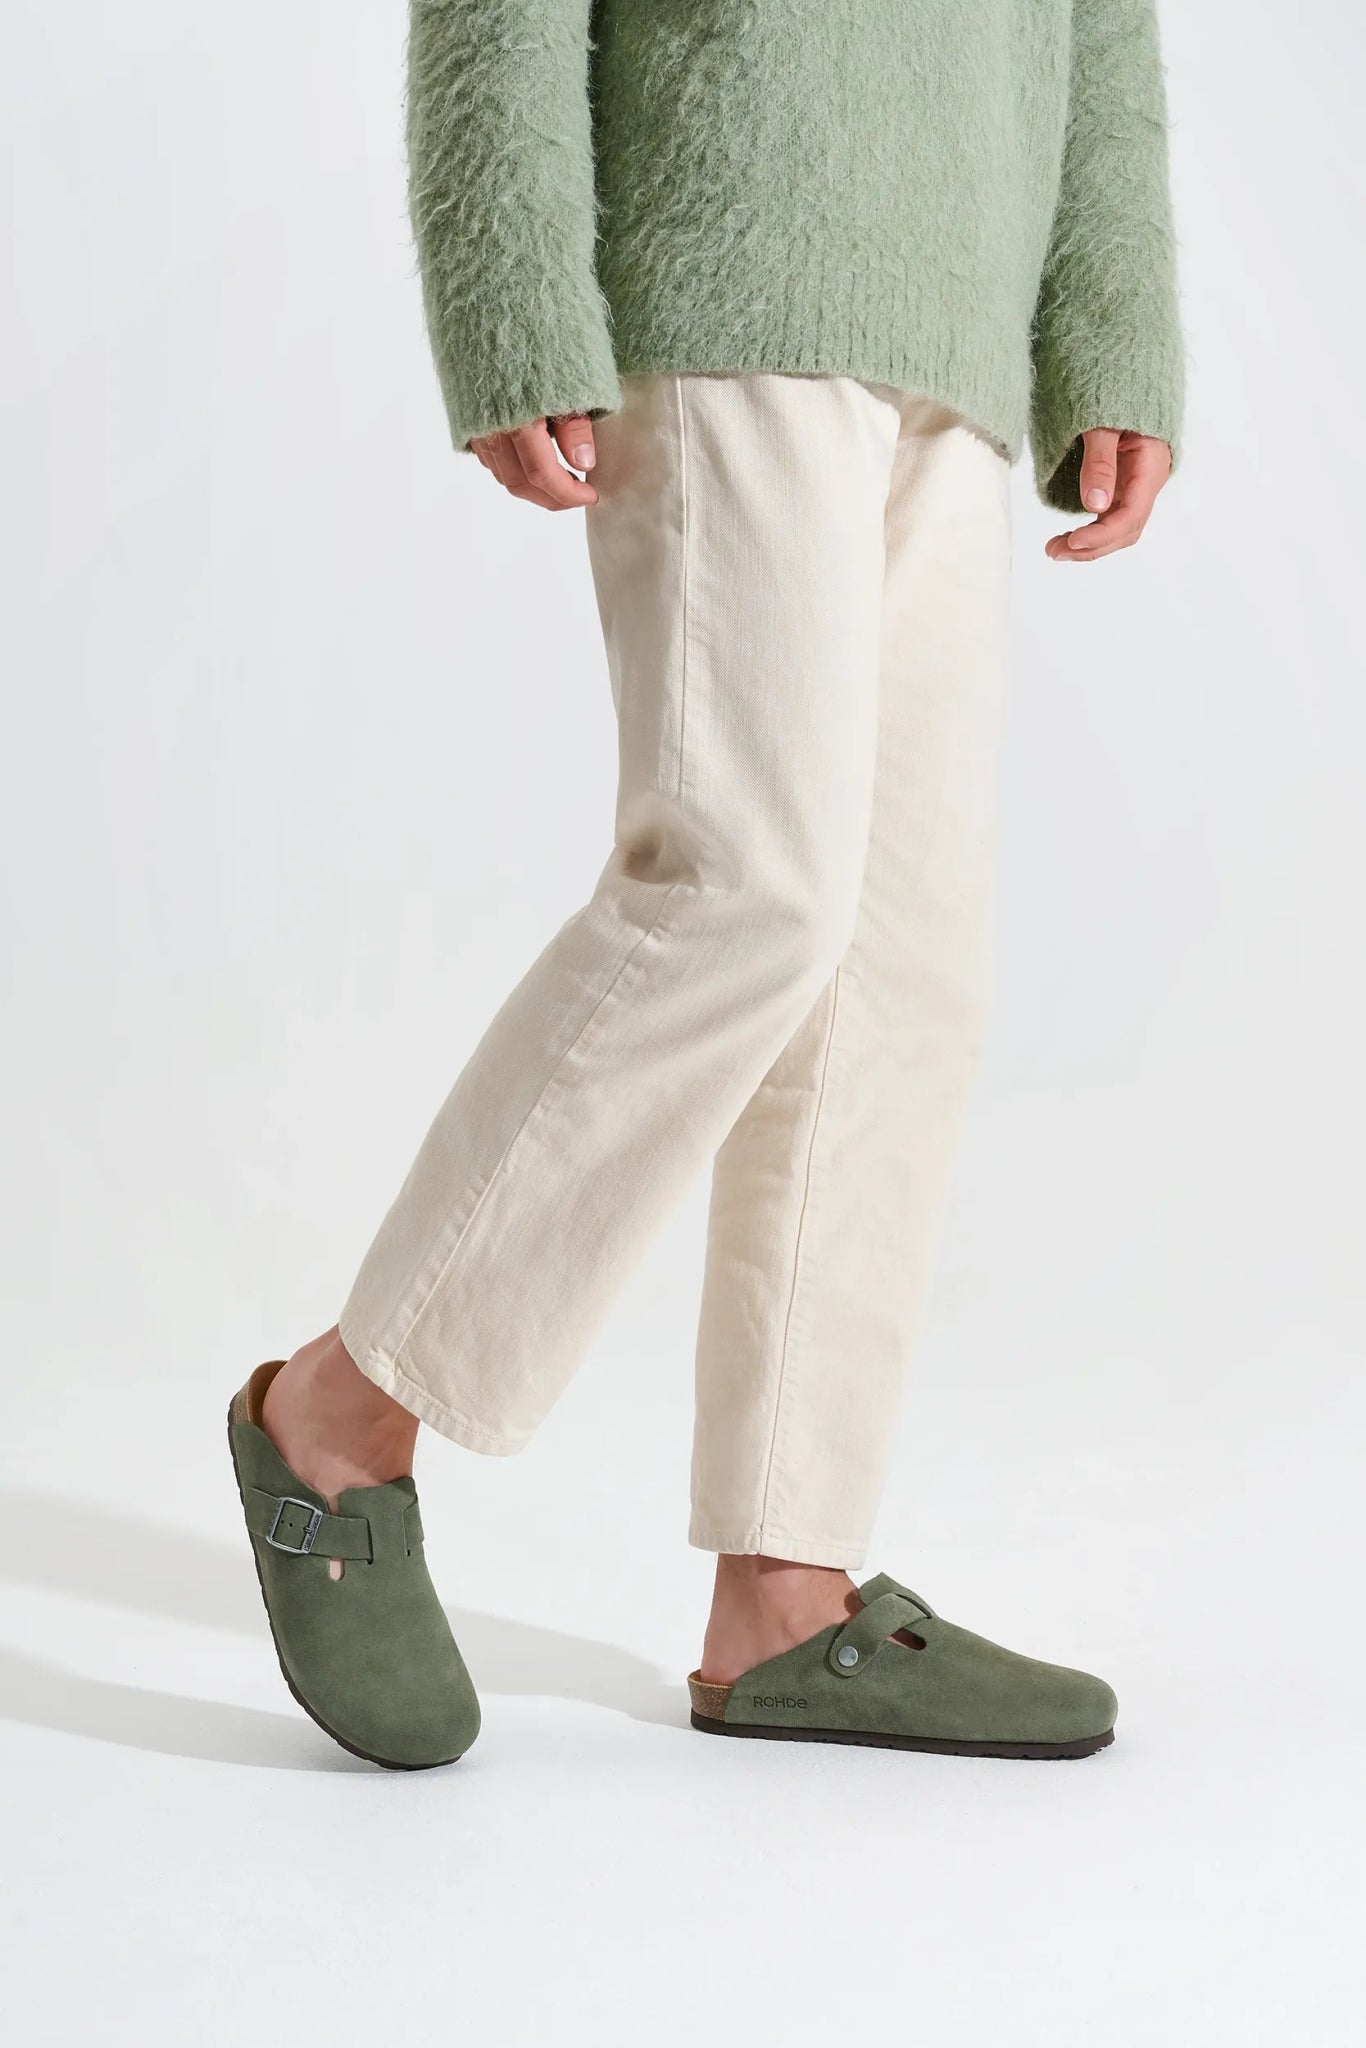 'Grado' men's clog - green - Chaplinshoes'Grado' men's clog - greenRohde